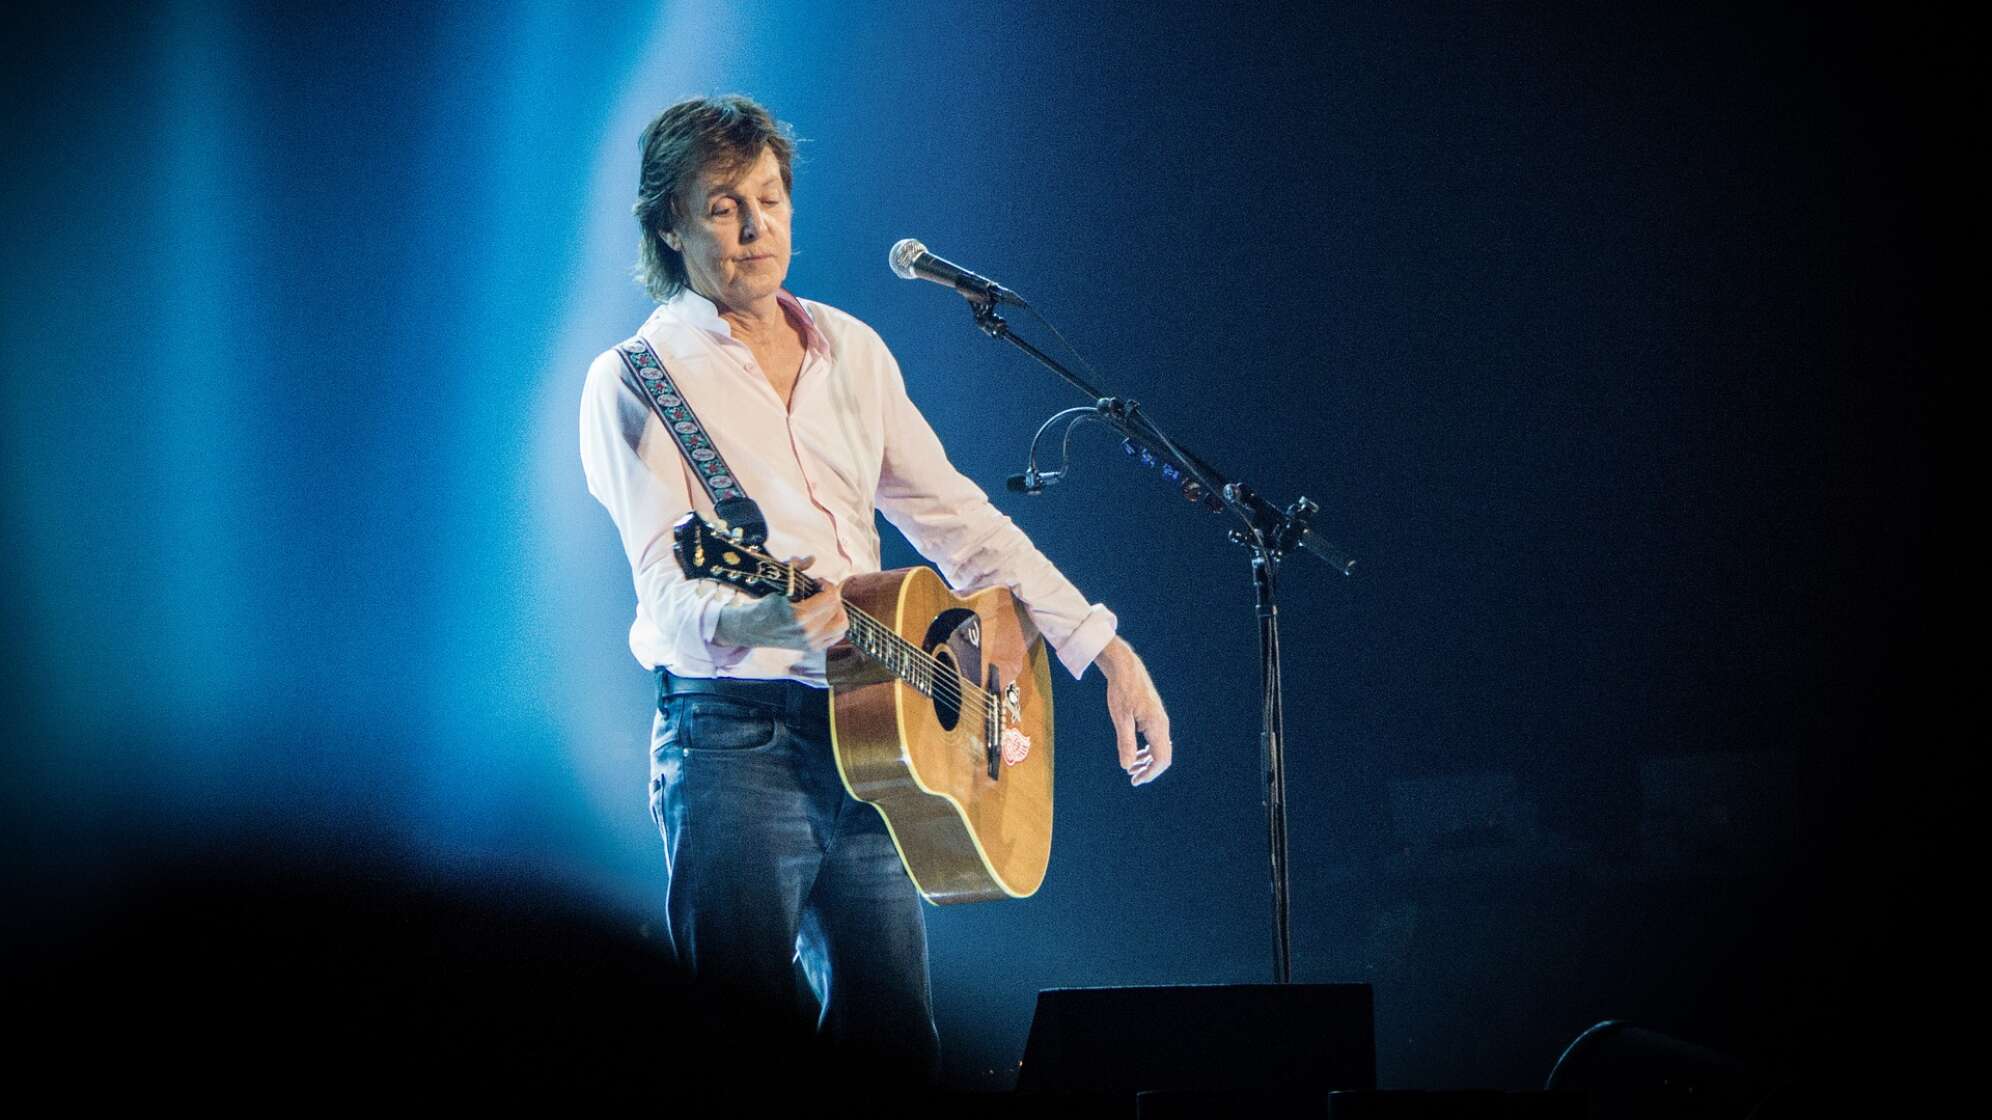 Paul McCartney steht mit seiner Akustik-Gitarre im Scheinwerferlicht